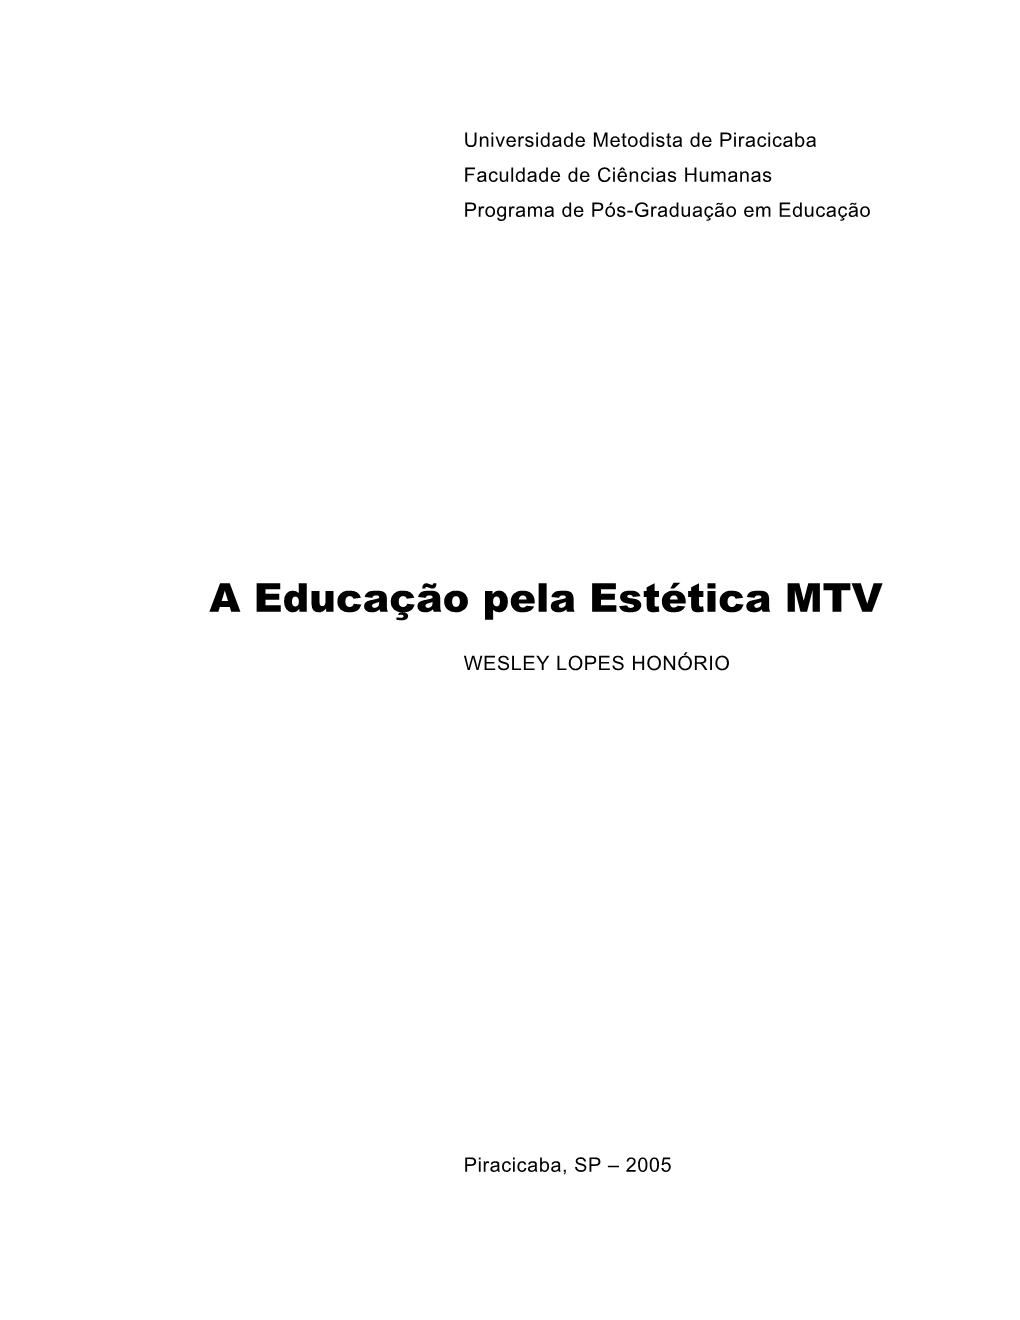 A Educação Pela Estética MTV